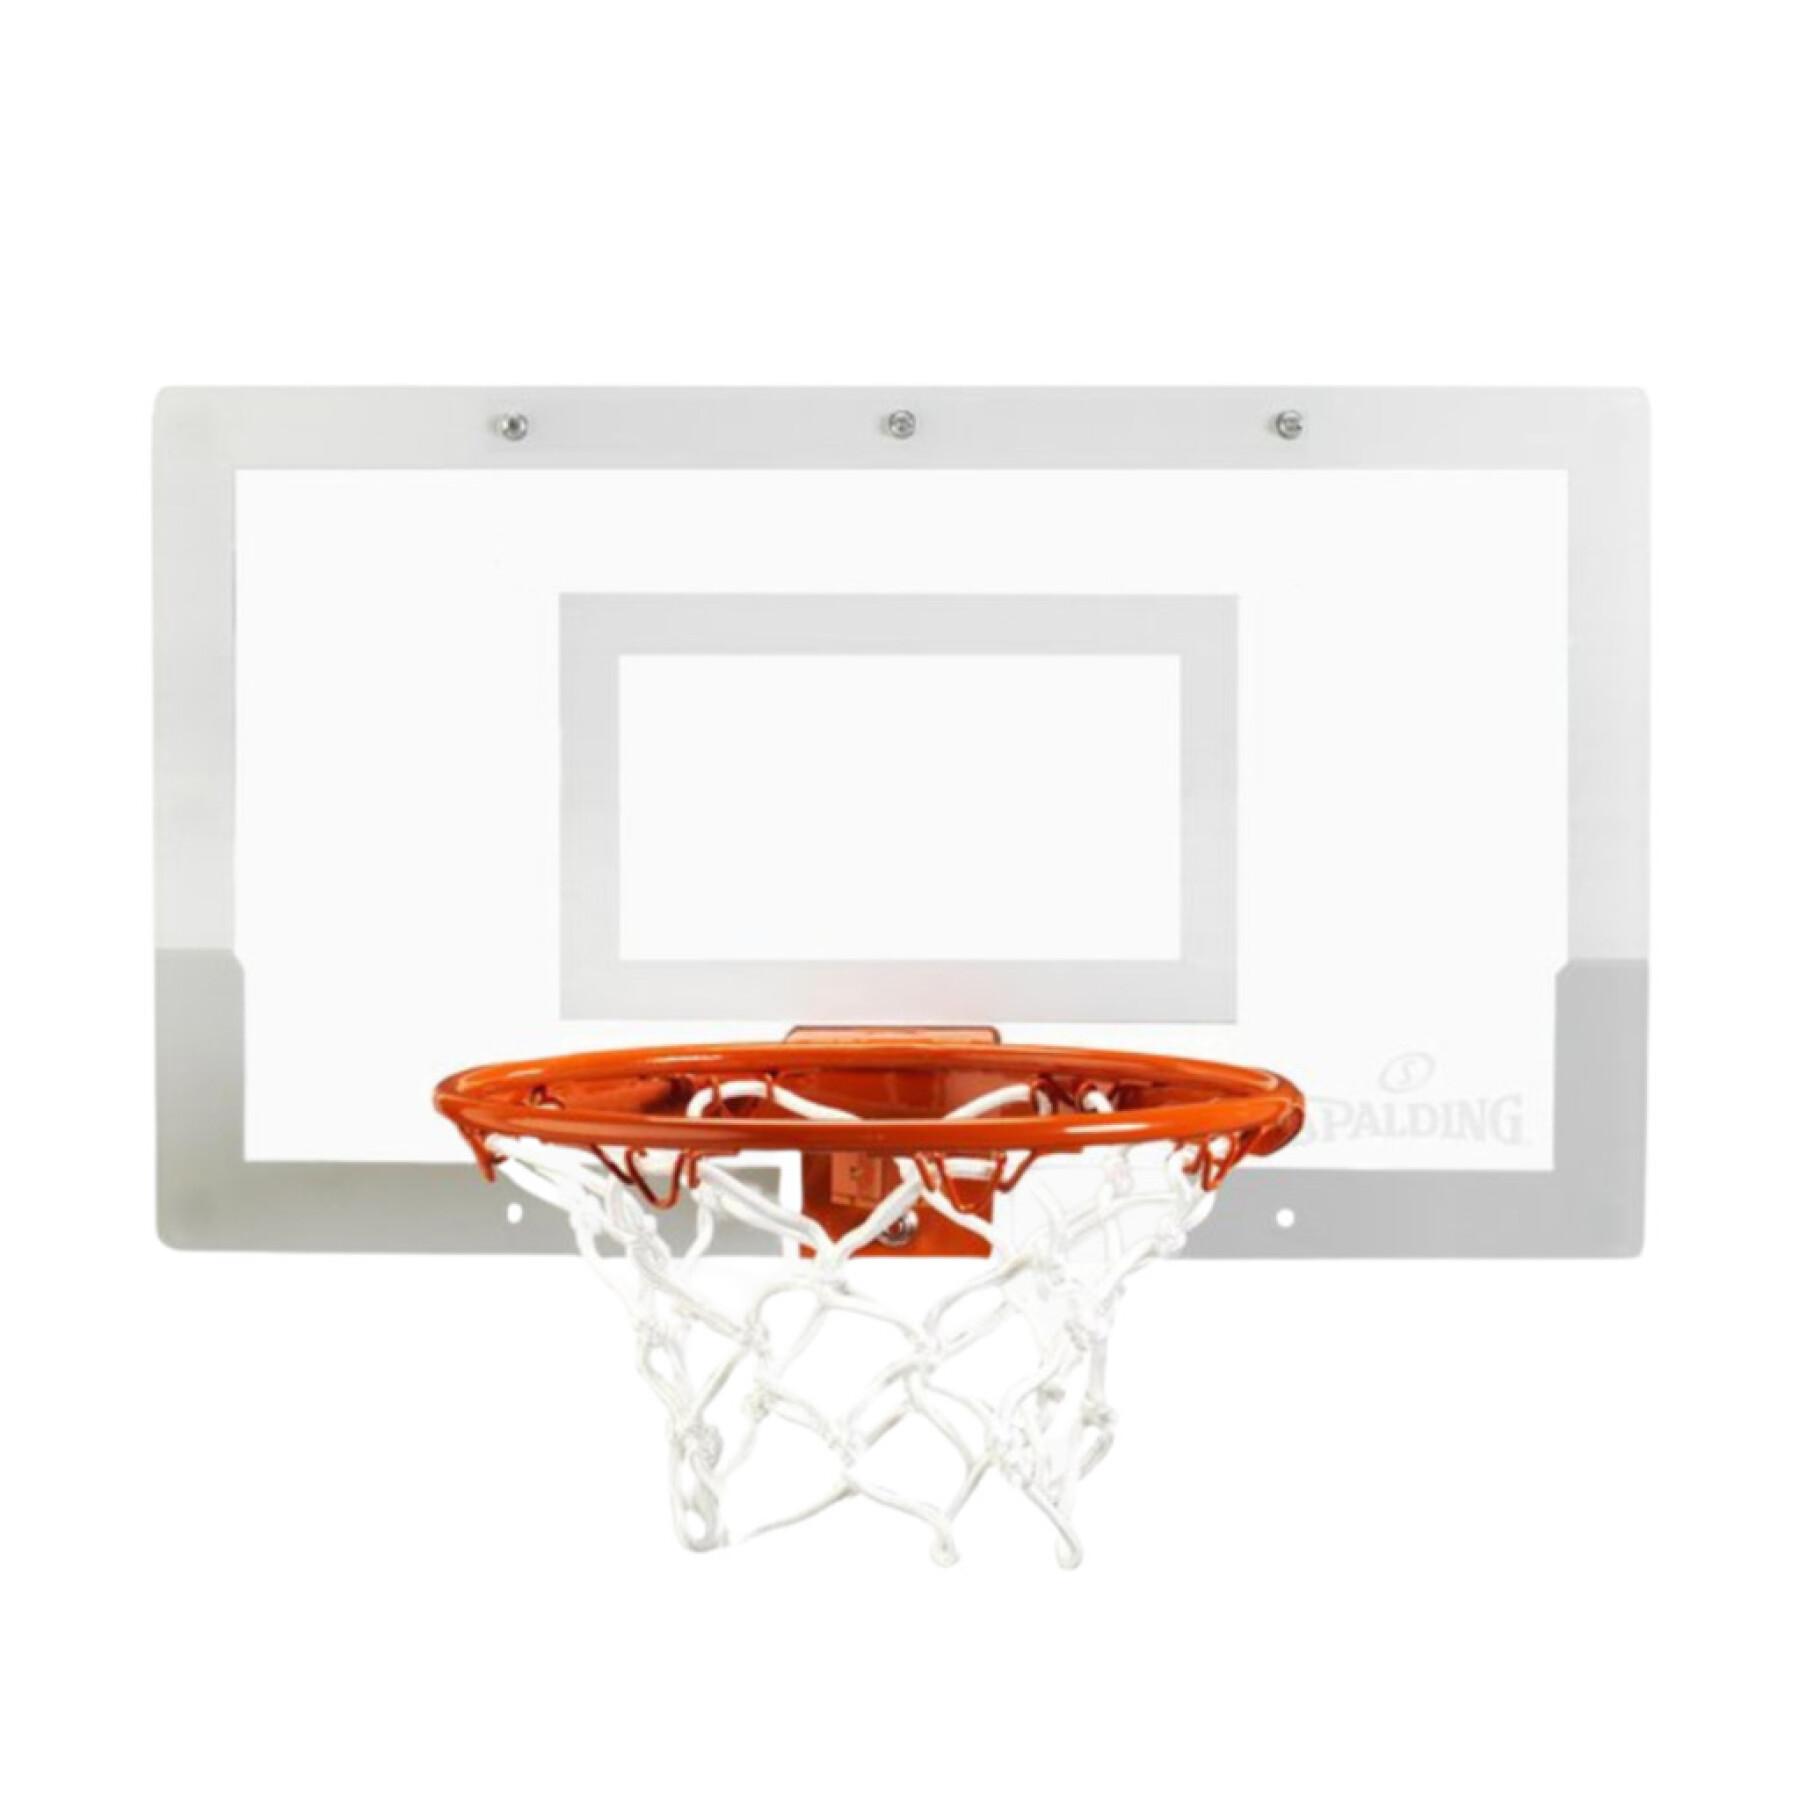 Basketkorg Spalding Arena Slam 180